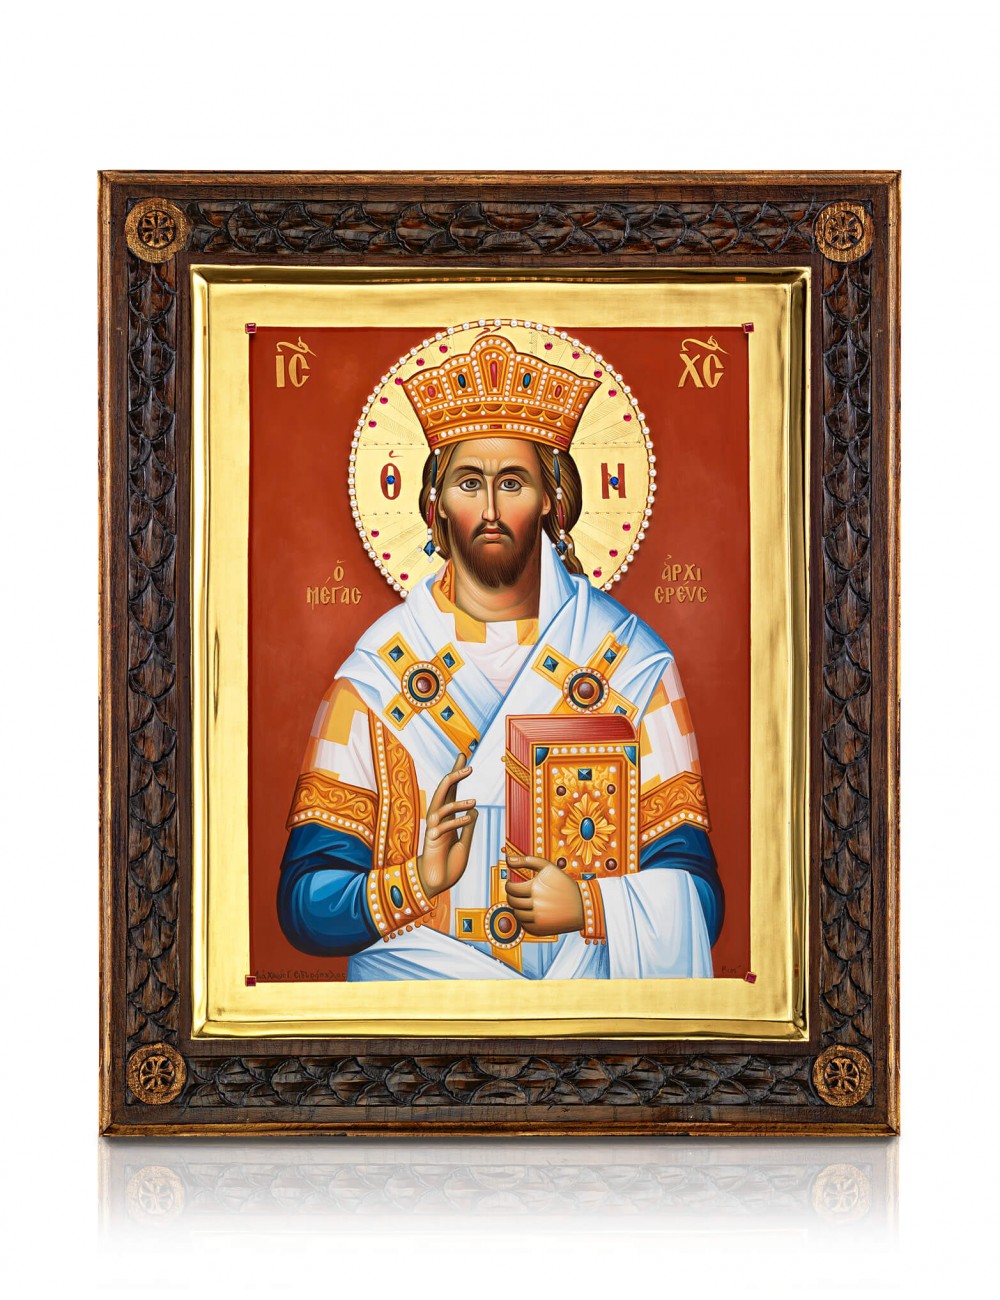 Χριστός ο Μέγας Αρχιερέας- Στιλβωτό Χρυσό & Τσουκάνικο